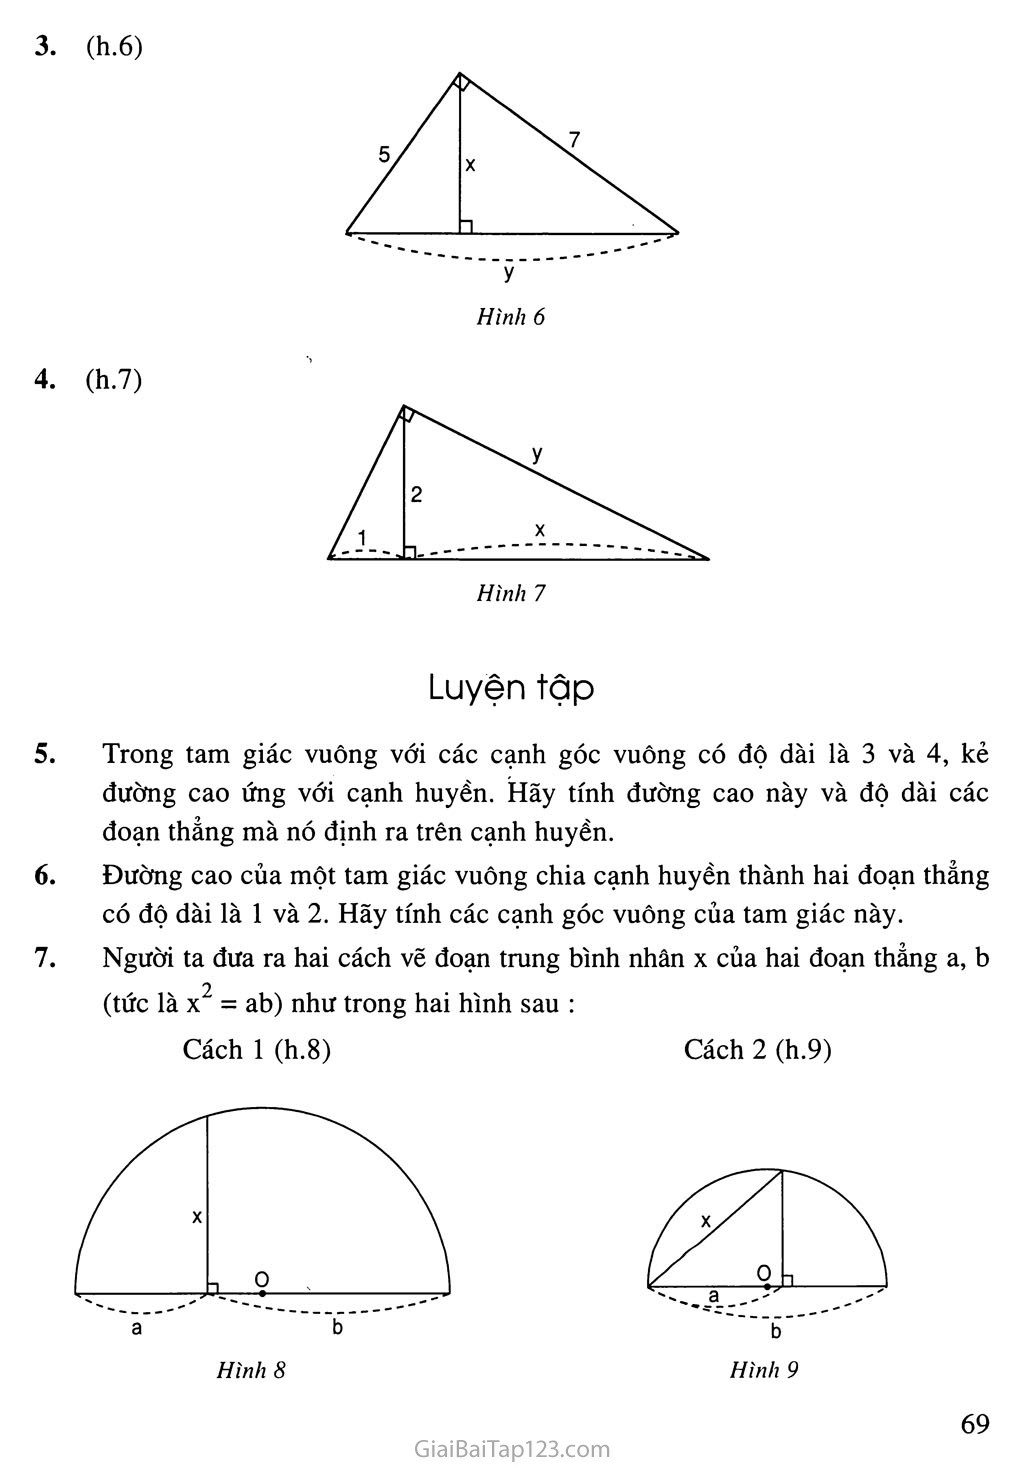 Bài 1. Một số hệ thức về cạnh và đường cao trong tam giác vuông trang 6